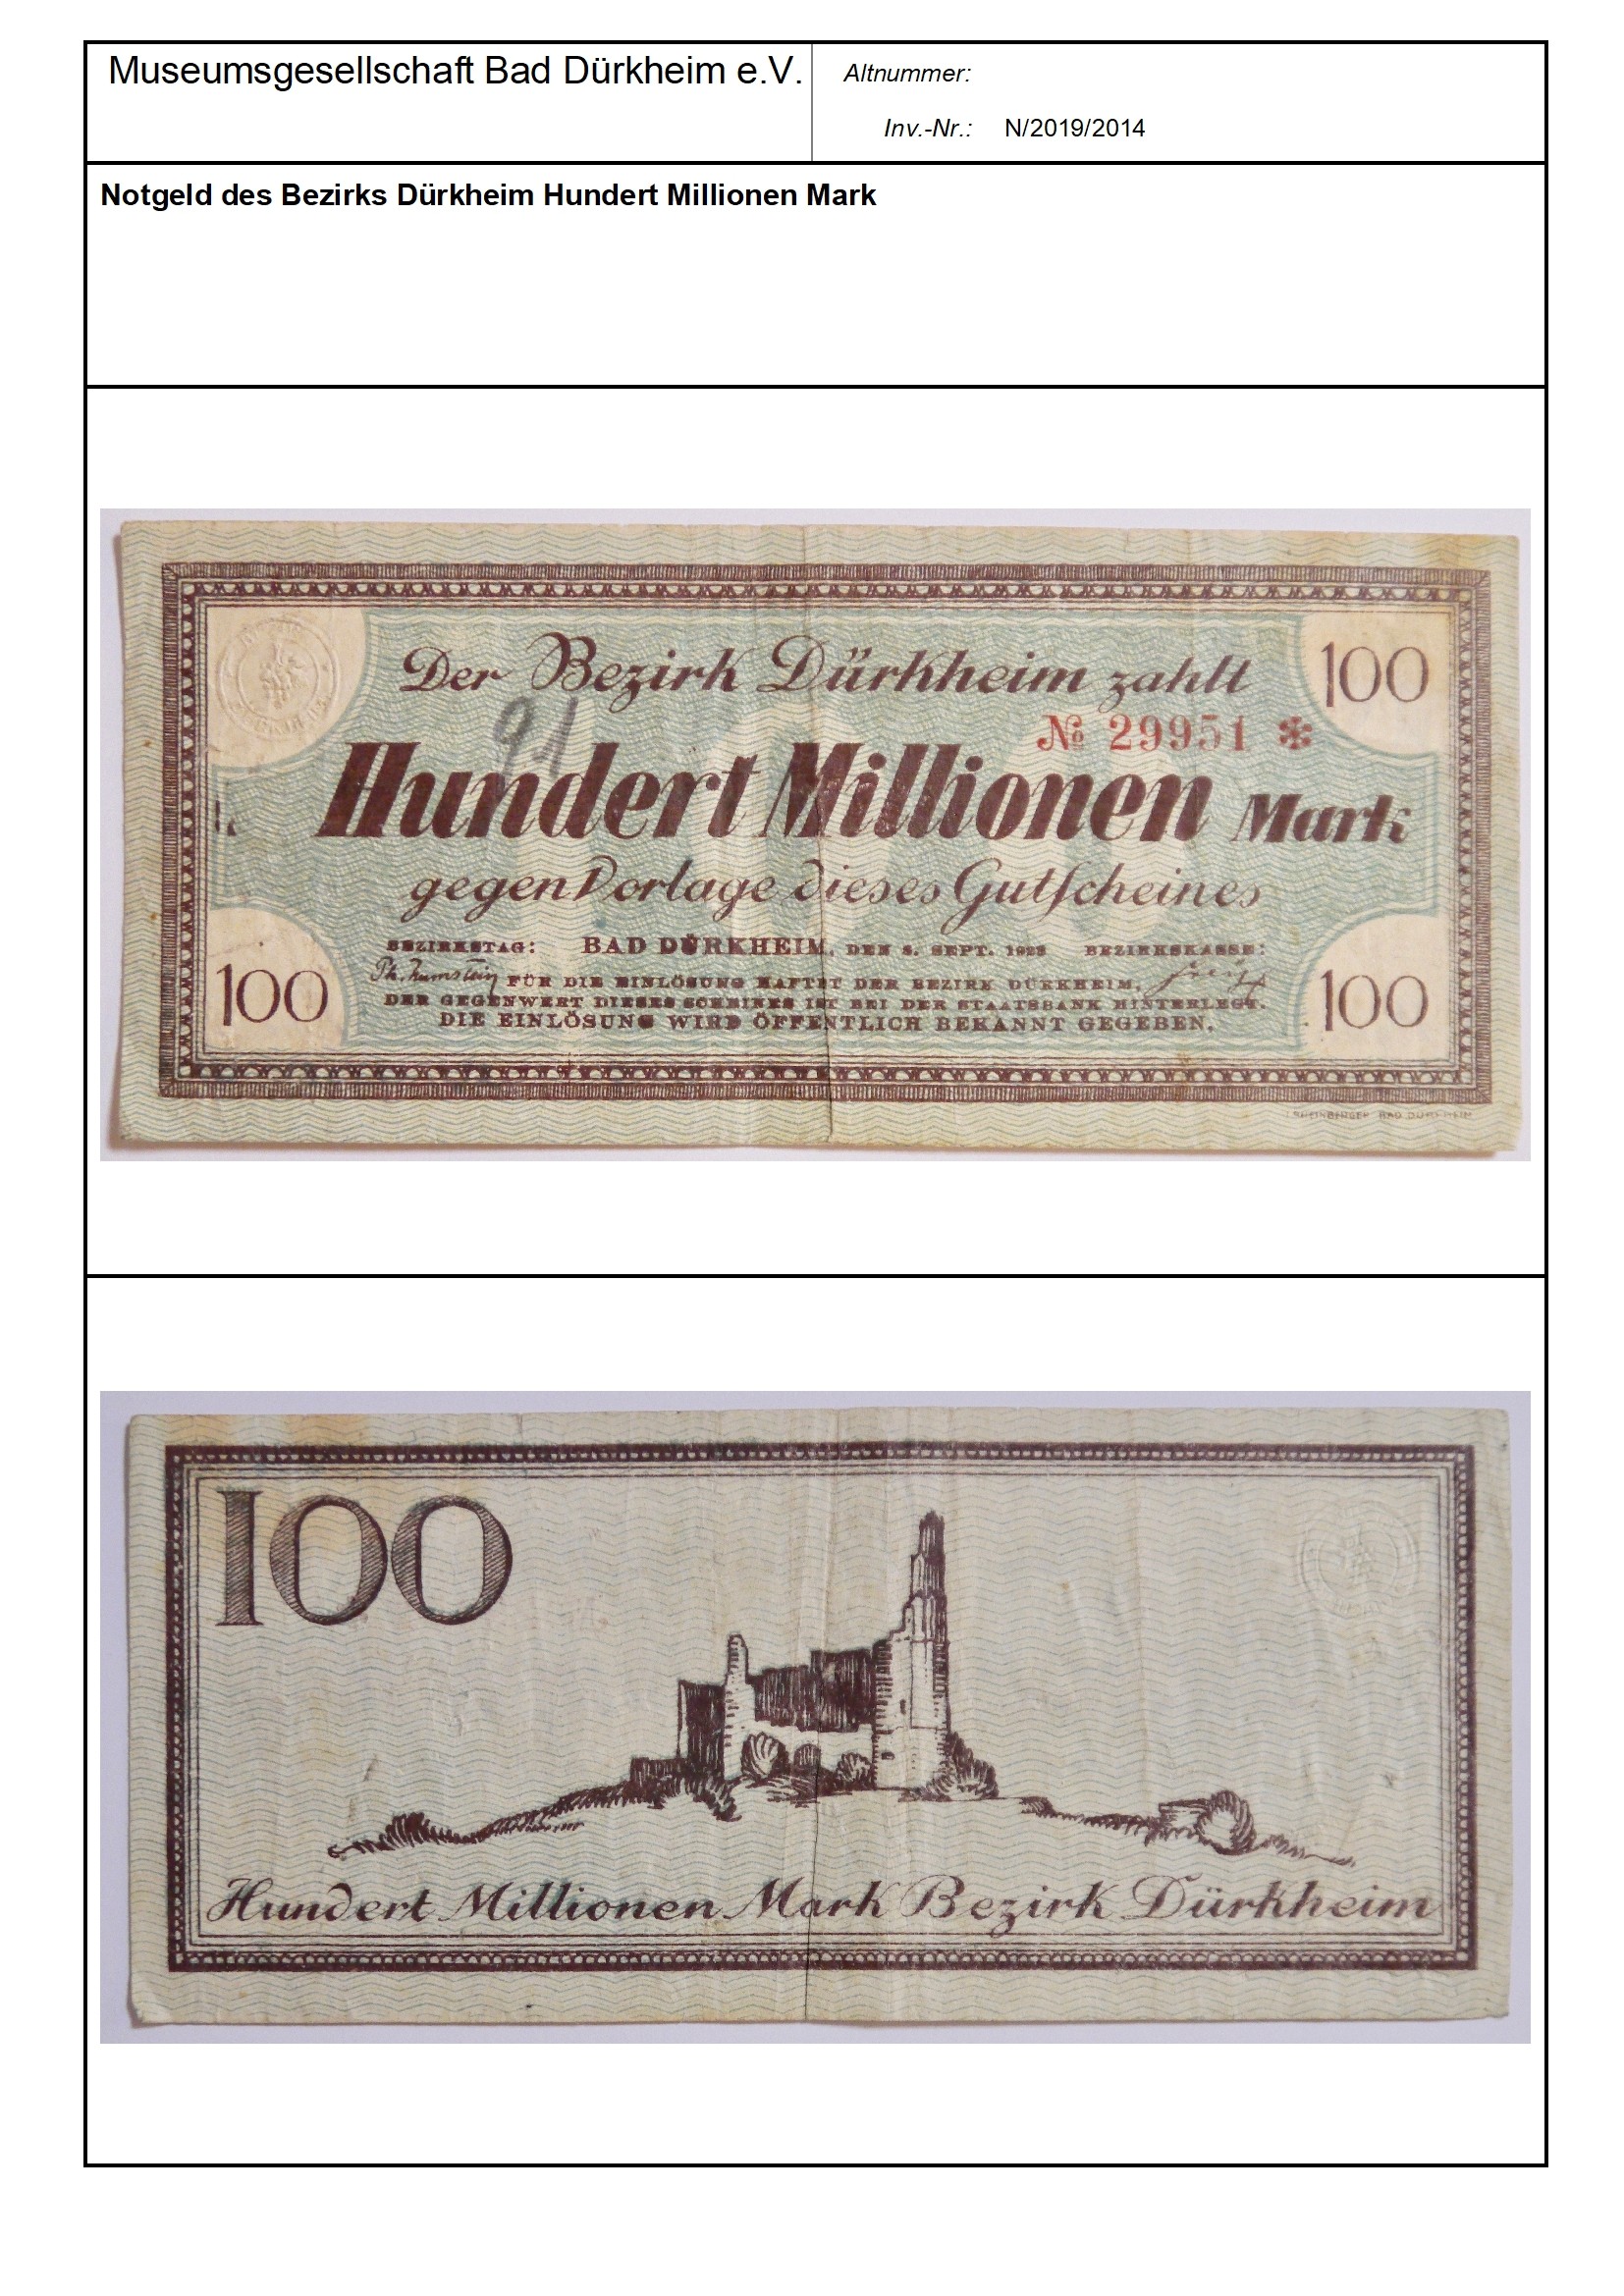 Notgeld des Bezirks Dürkheim Hundert Millionen Mark
Serien-Nummer: No 29951 * (Museumsgesellschaft Bad Dürkheim e.V. CC BY-NC-SA)